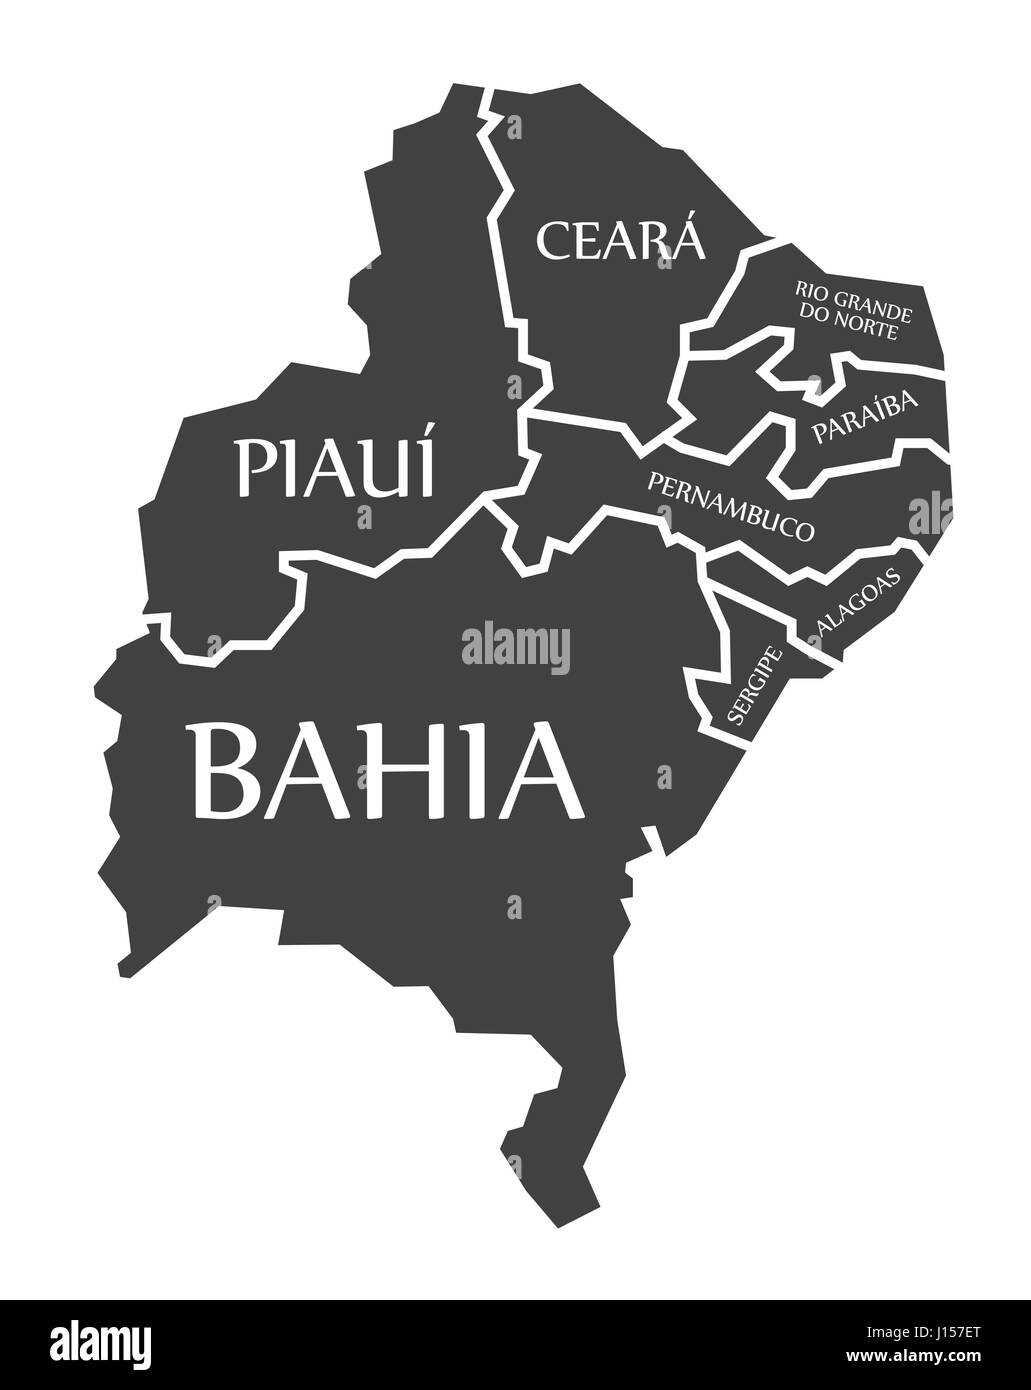 Bahia - Piaui - Ceara - Sergipe - Pernambuco - Alagoas - Paraiba - Rio Grande Do Norte Map Brazil illustration Stock Vector